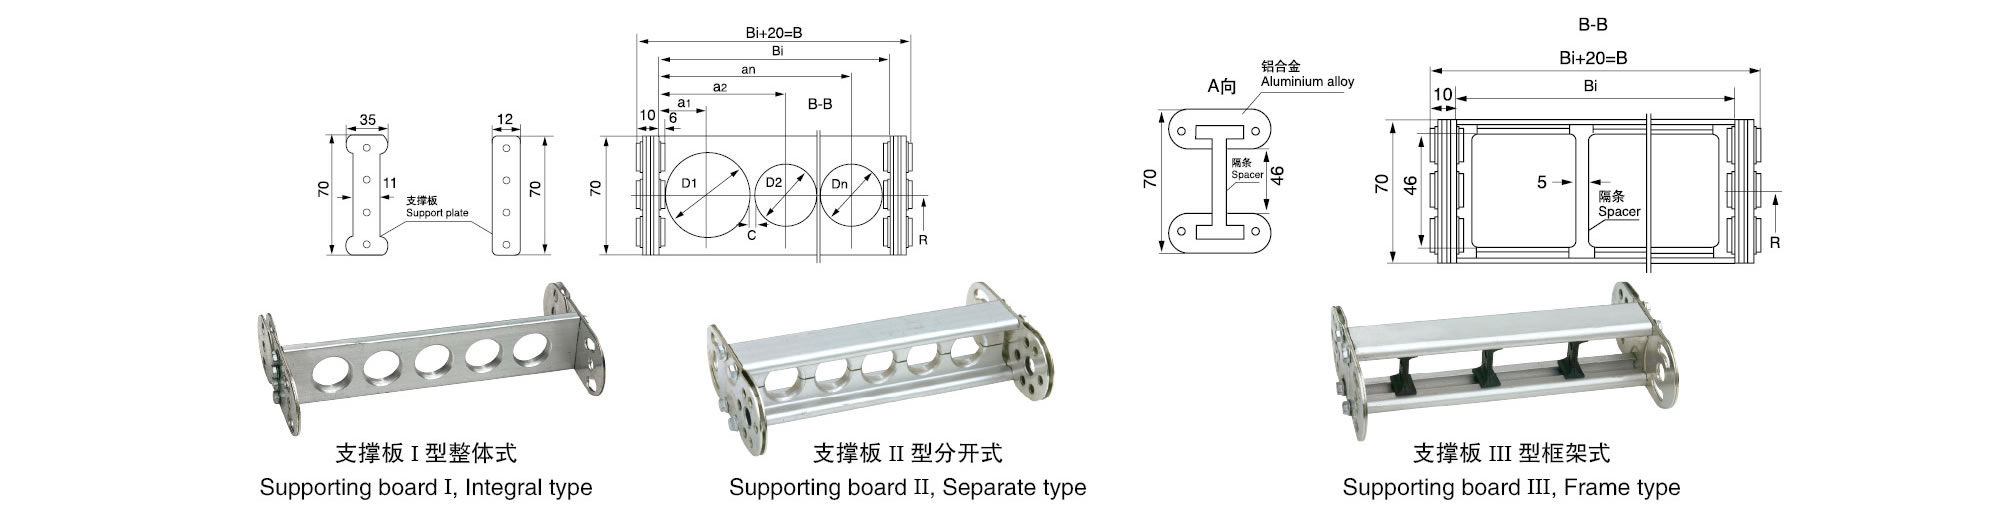 TL95型钢制拖链（桥式）铝板链接方式示意图